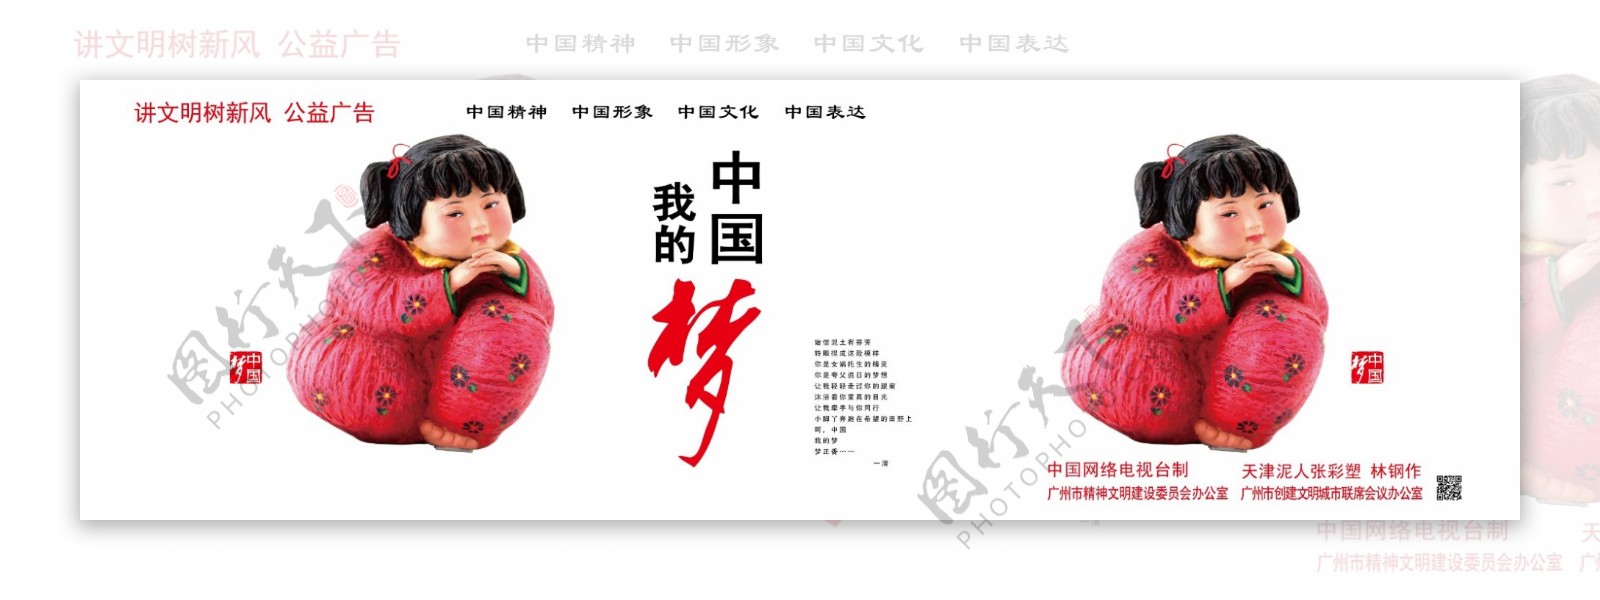 中国梦彩塑公益广告图片